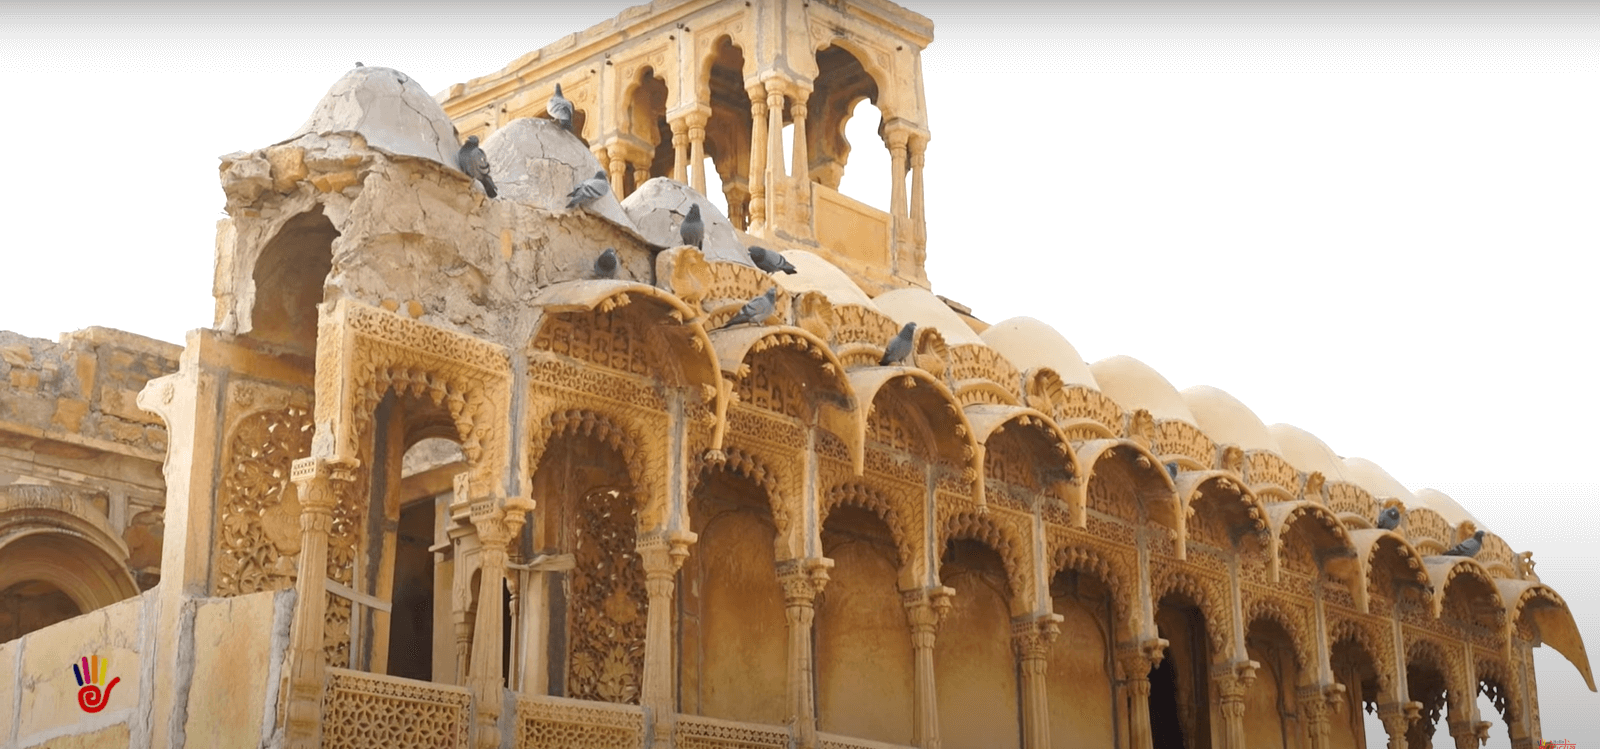 सालिम सिंह की हवेली (Salim singh ki haweli ) Jaisalmer